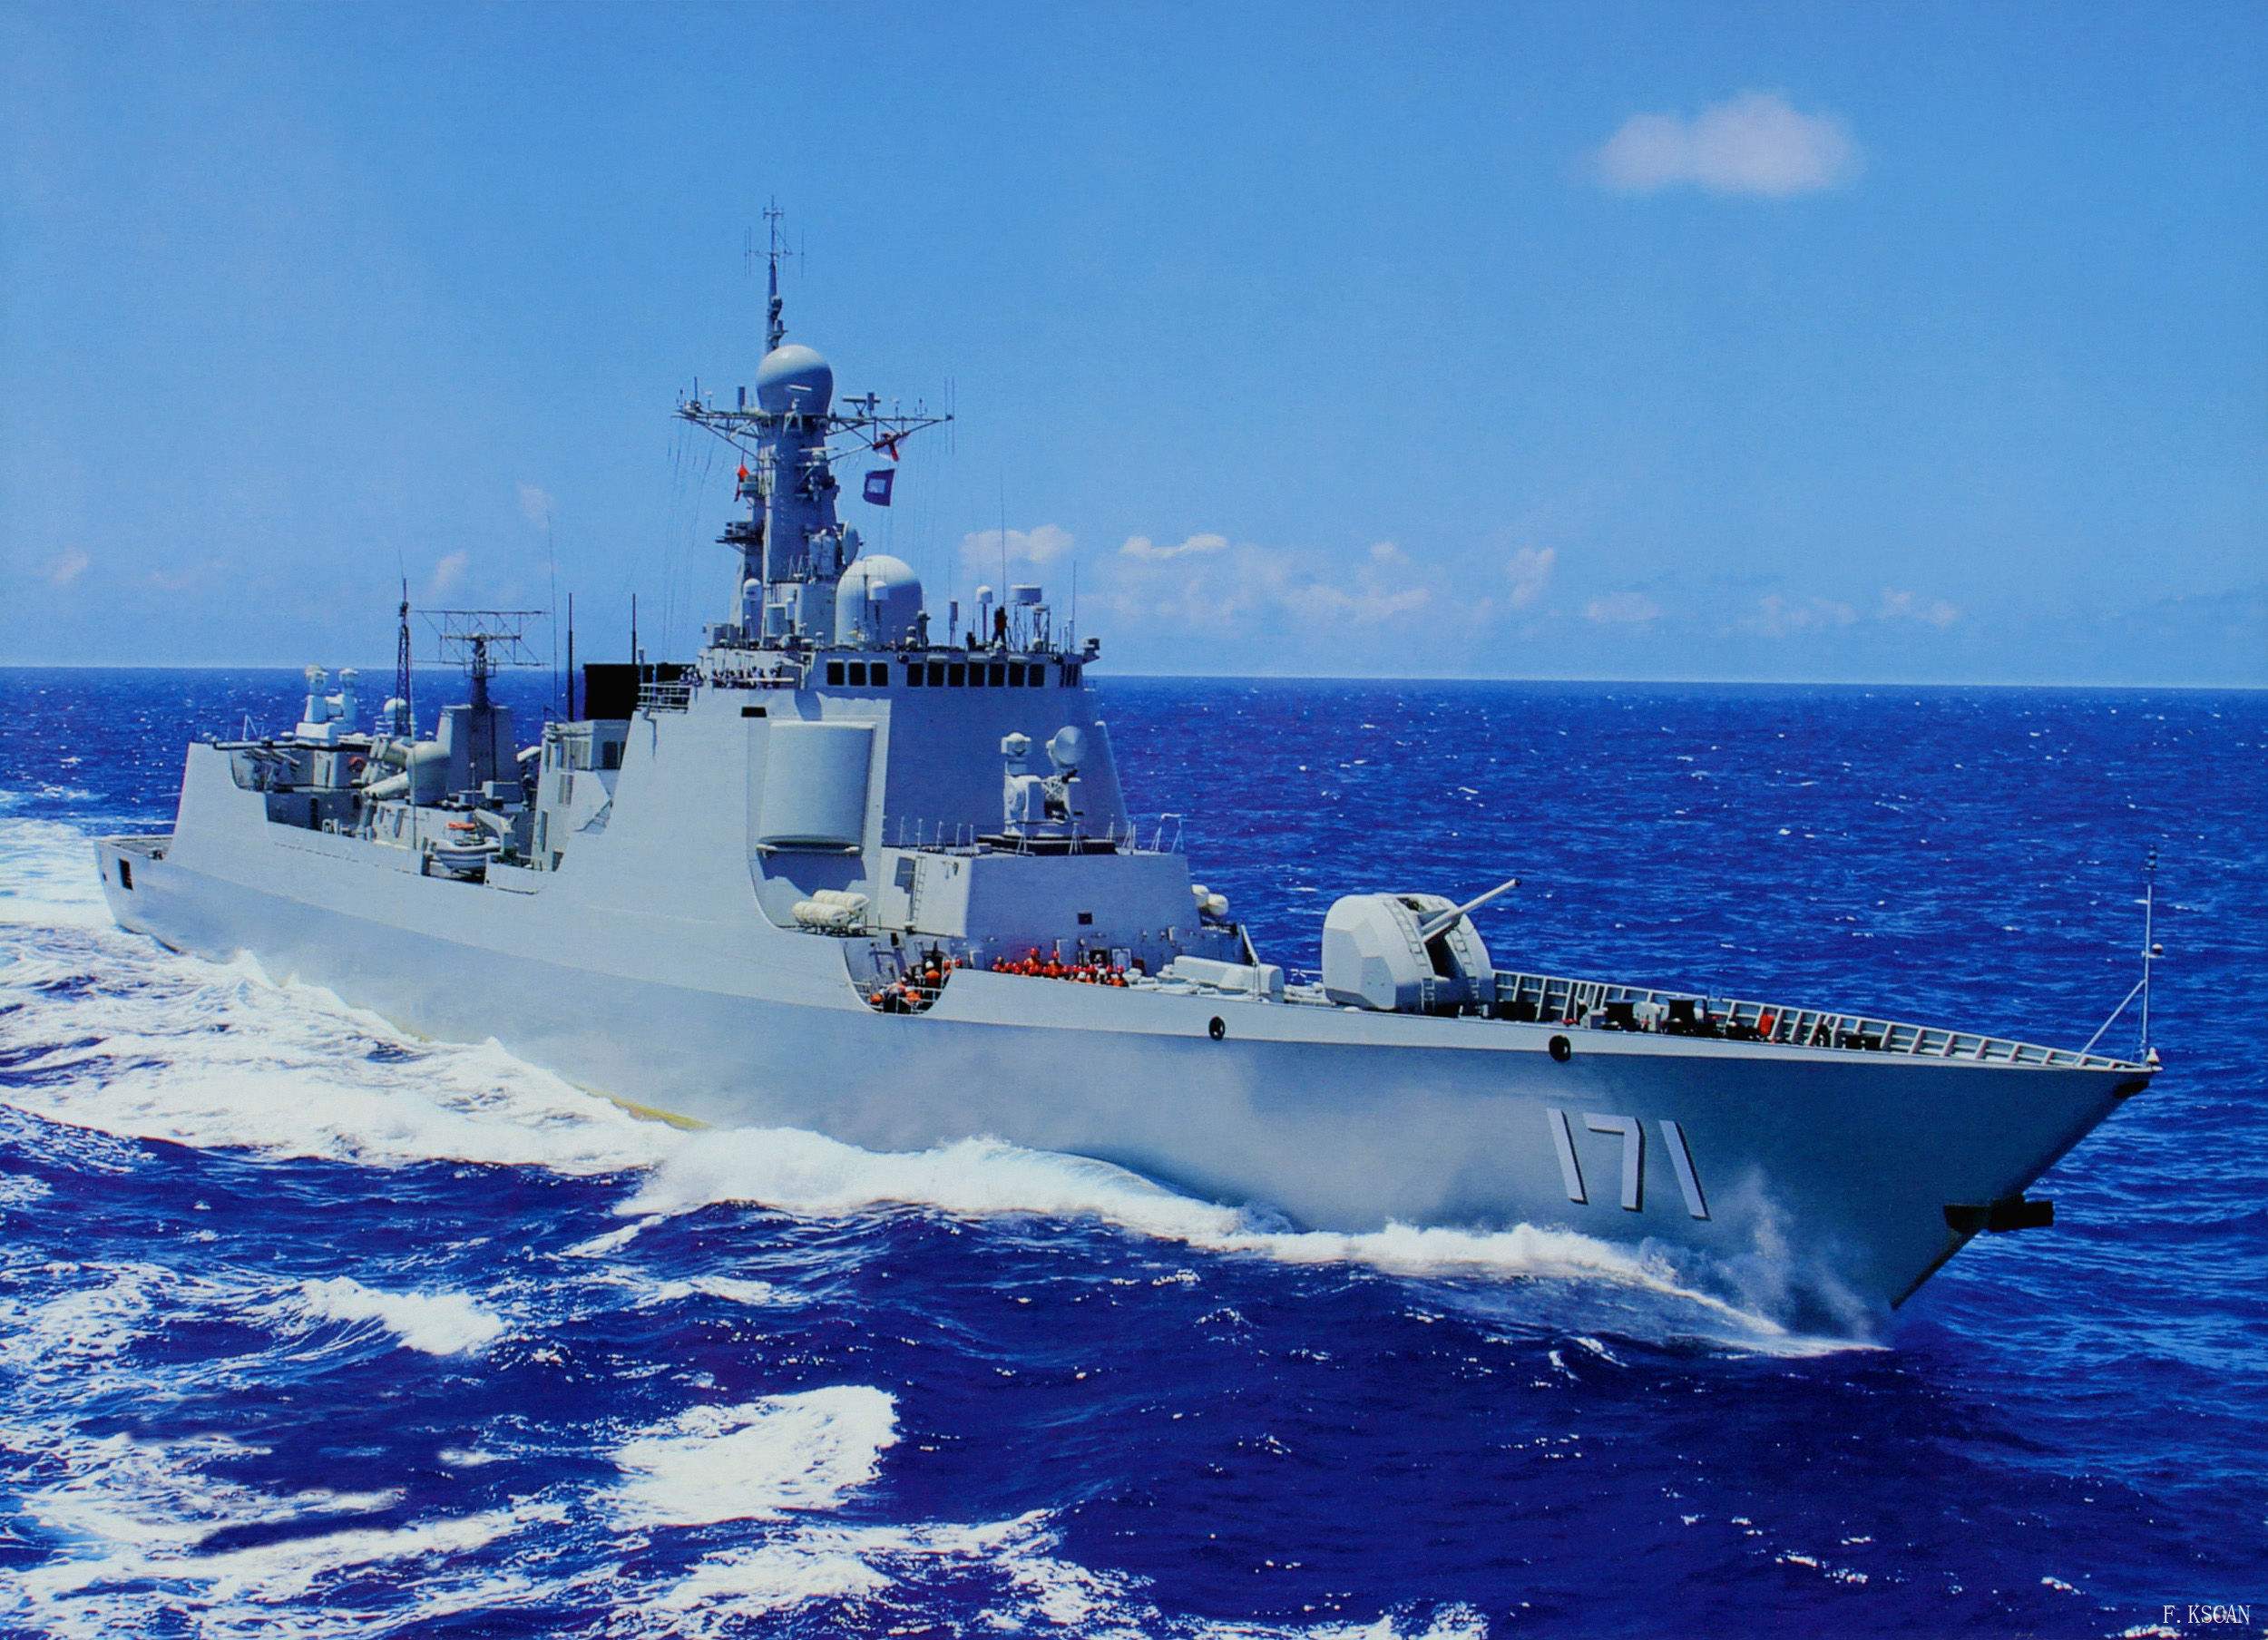 157“丽水”舰舰徽亮相 25艘052D全部服役 年末驱逐舰总数升至50艘